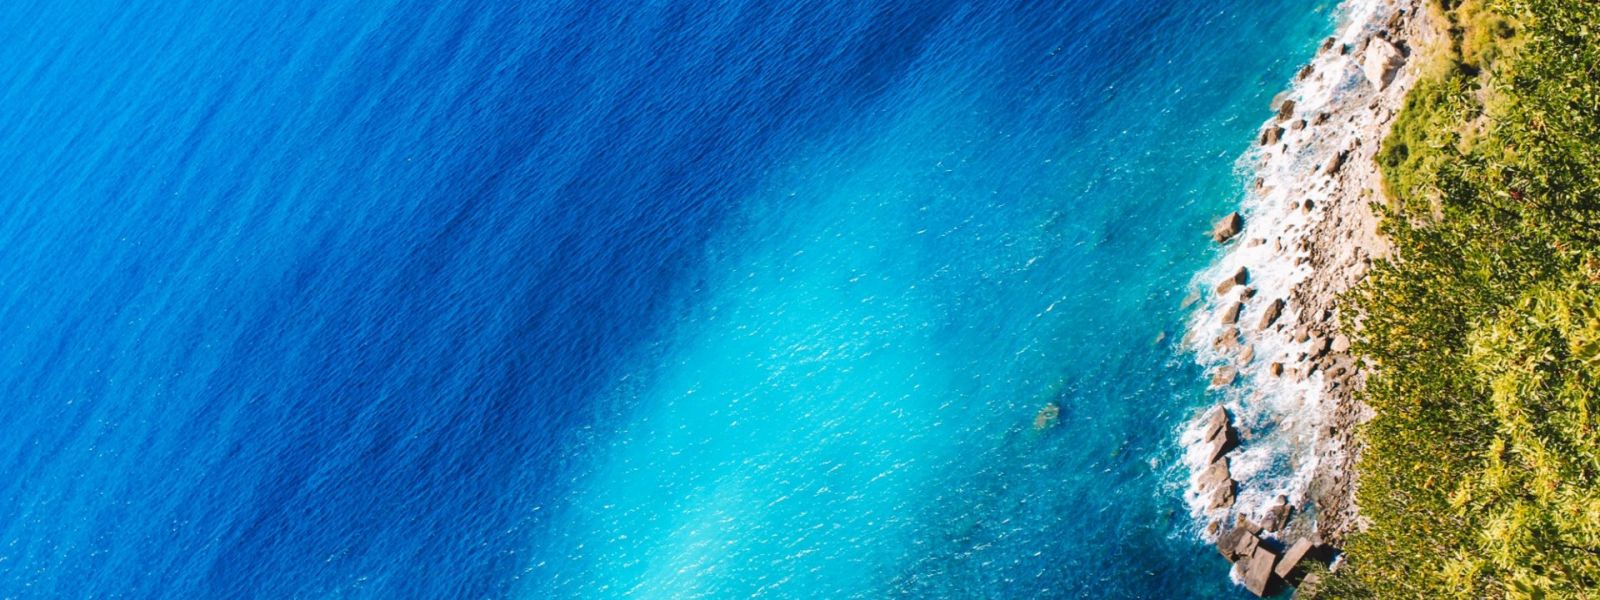 Vue aérienne de la mer avec des eaux turquoises, une plage de galets et une végétation verte